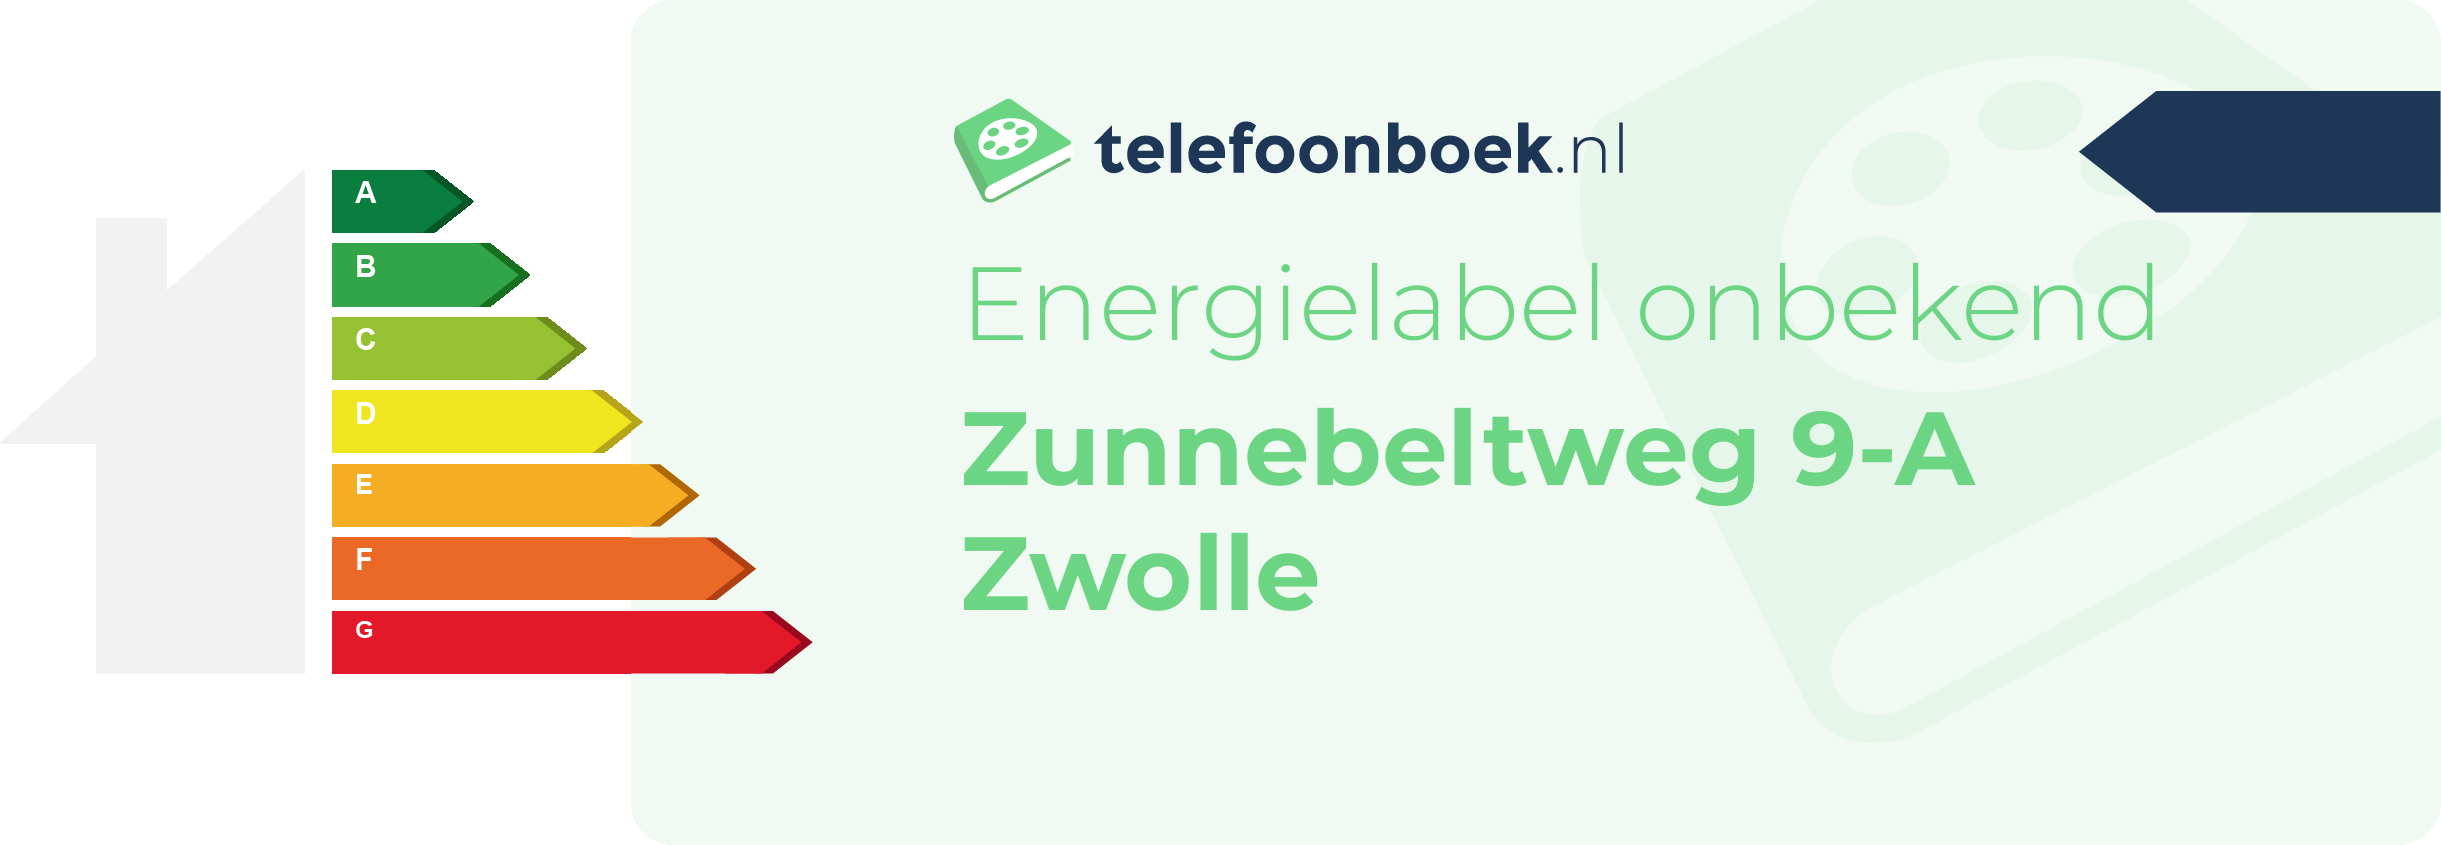 Energielabel Zunnebeltweg 9-A Zwolle